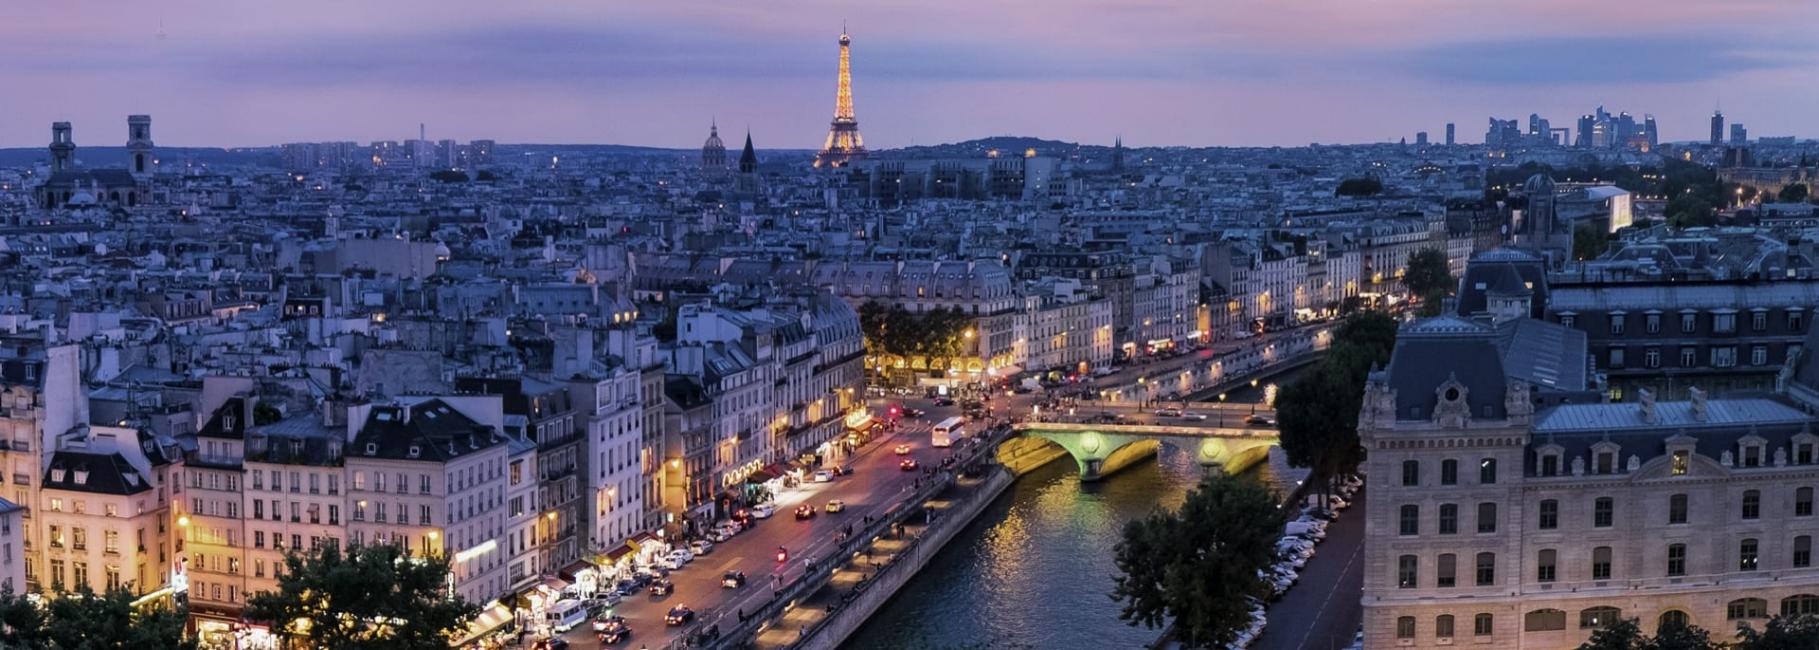 paris cultural trip header slk fe